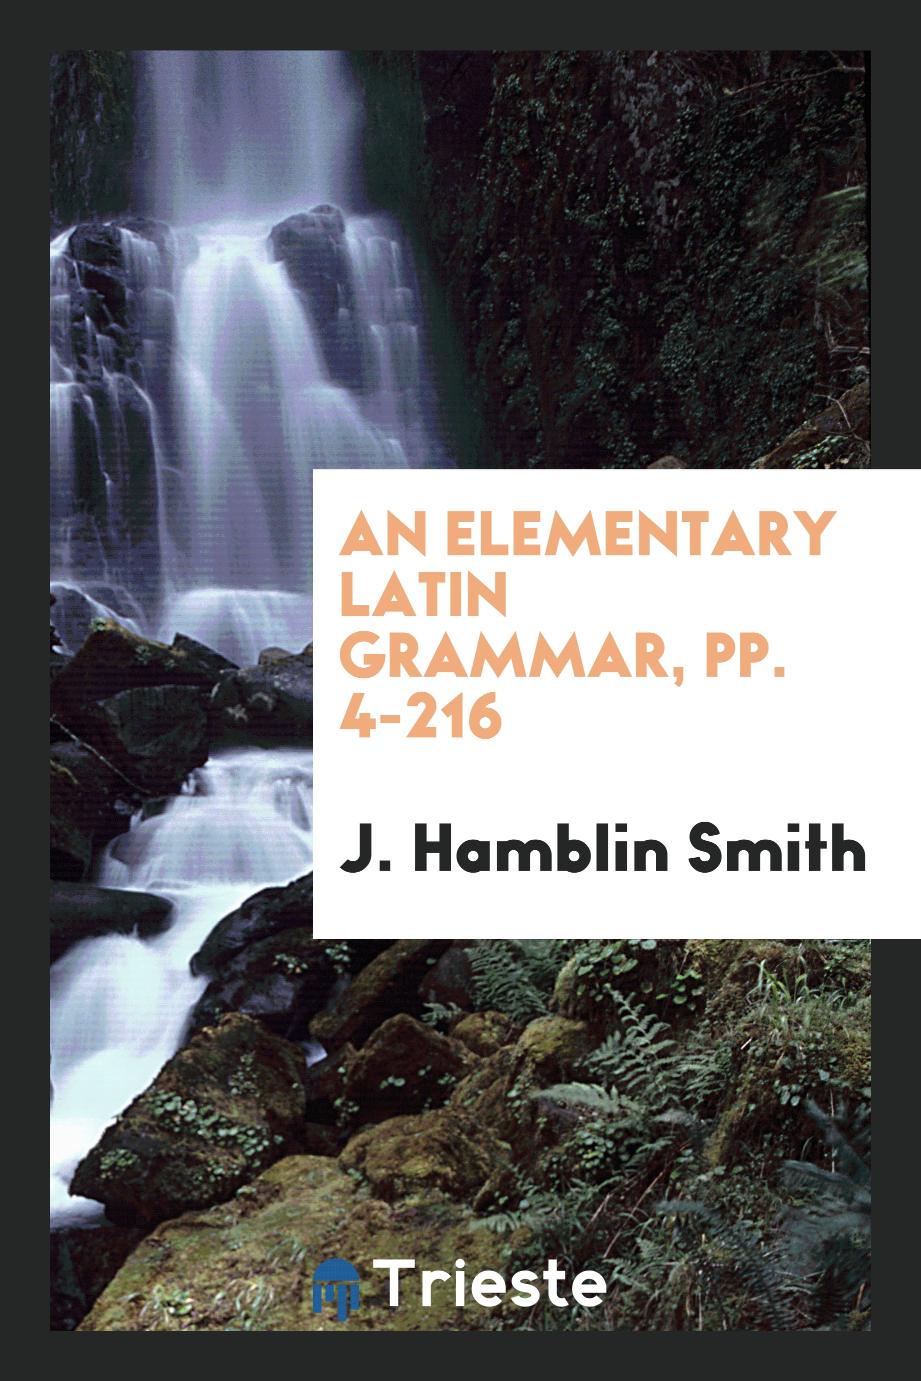 An Elementary Latin Grammar, pp. 4-216